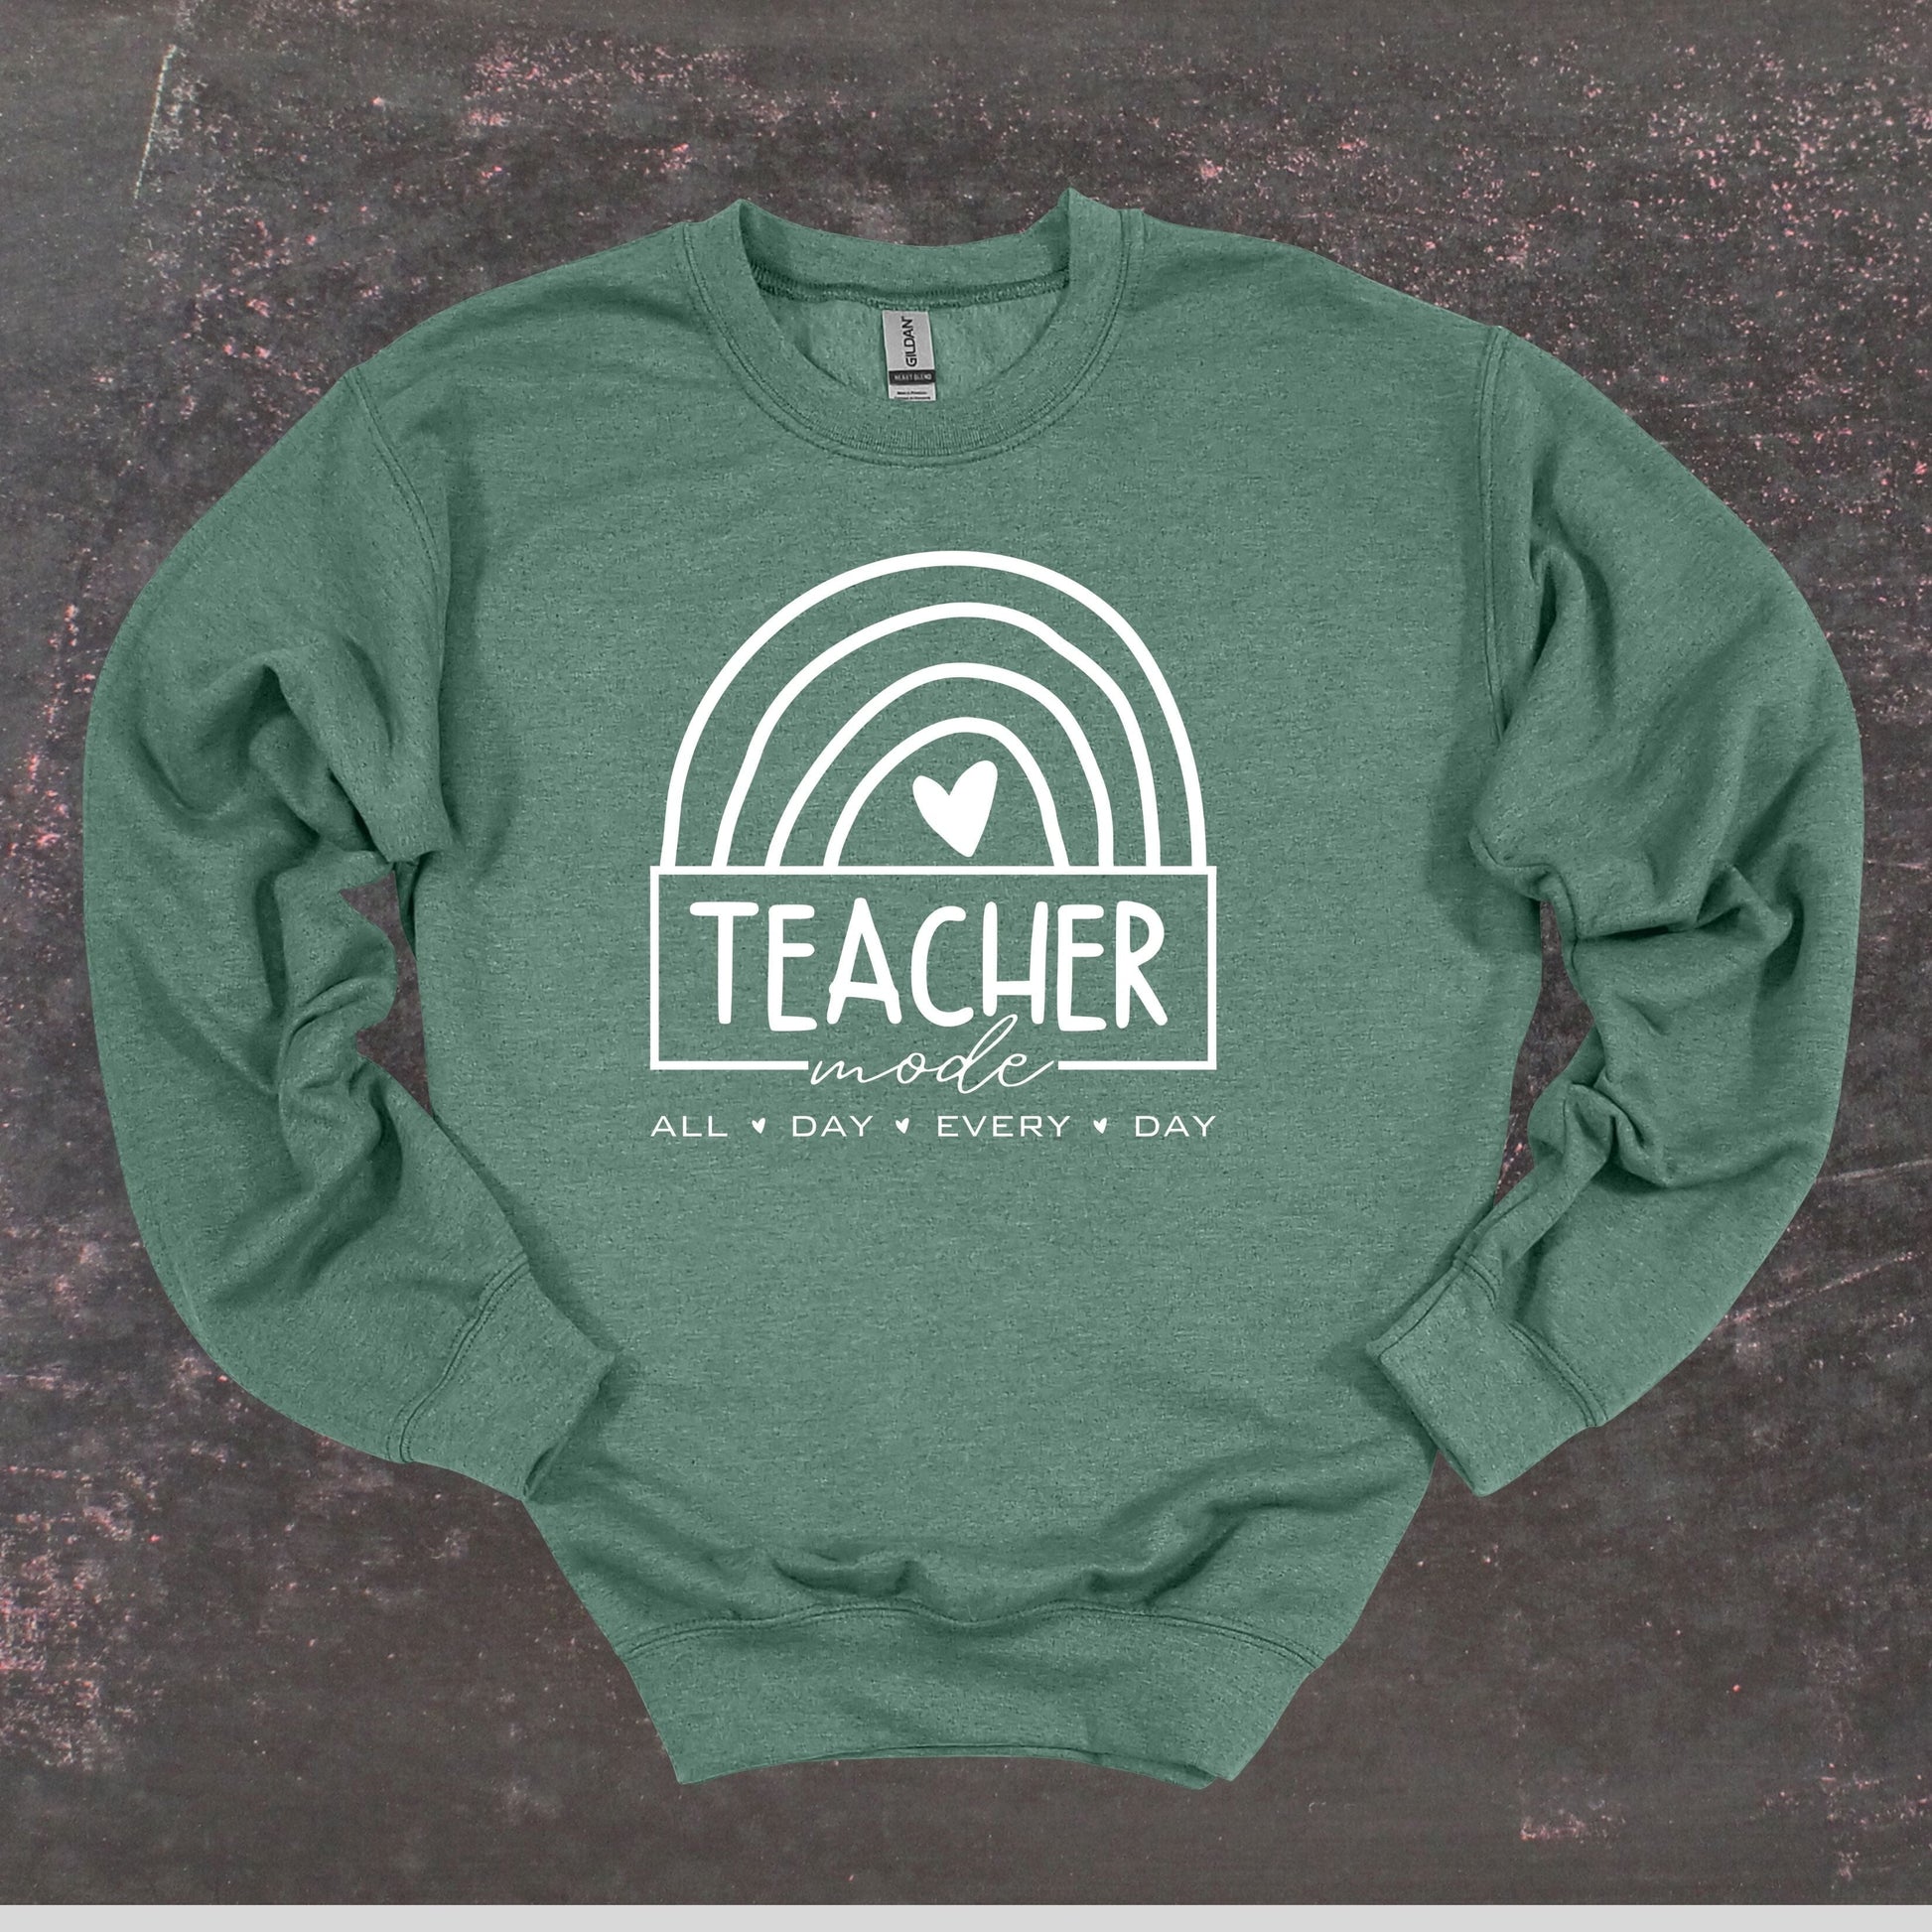 Teacher Mode - Teacher Crewneck Sweatshirt - Adult Sweatshirts Crewneck Sweatshirt Graphic Avenue Heather Sport Dark Green Adult Small 